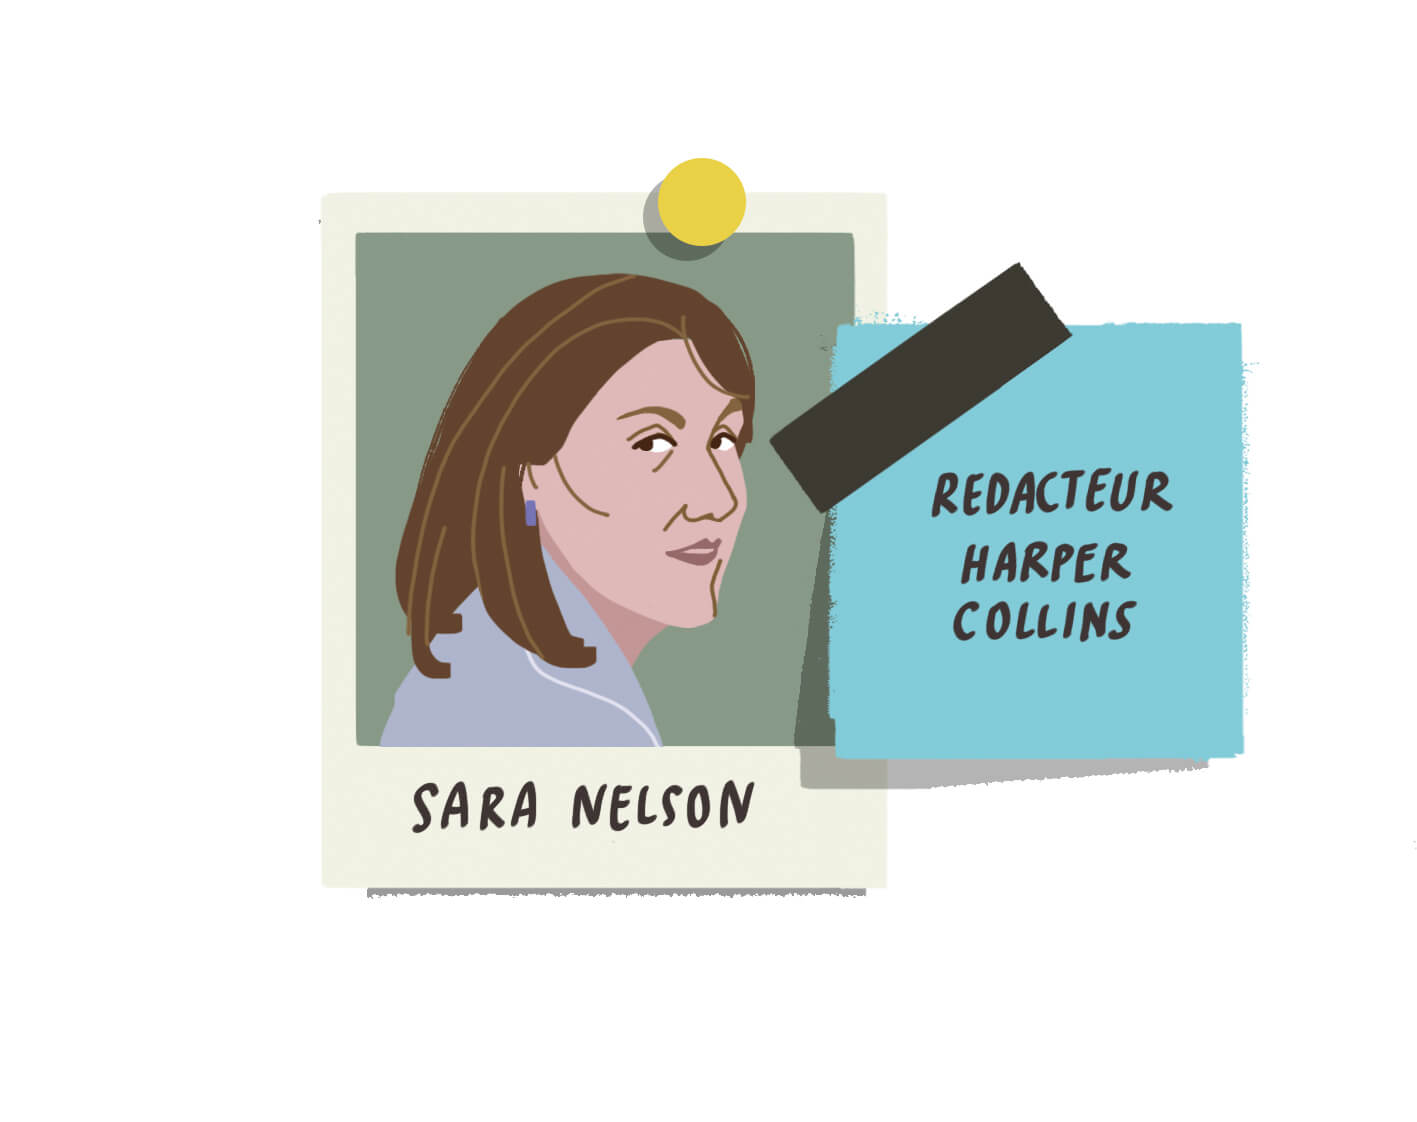 polaroid portrait of Sara Nelson